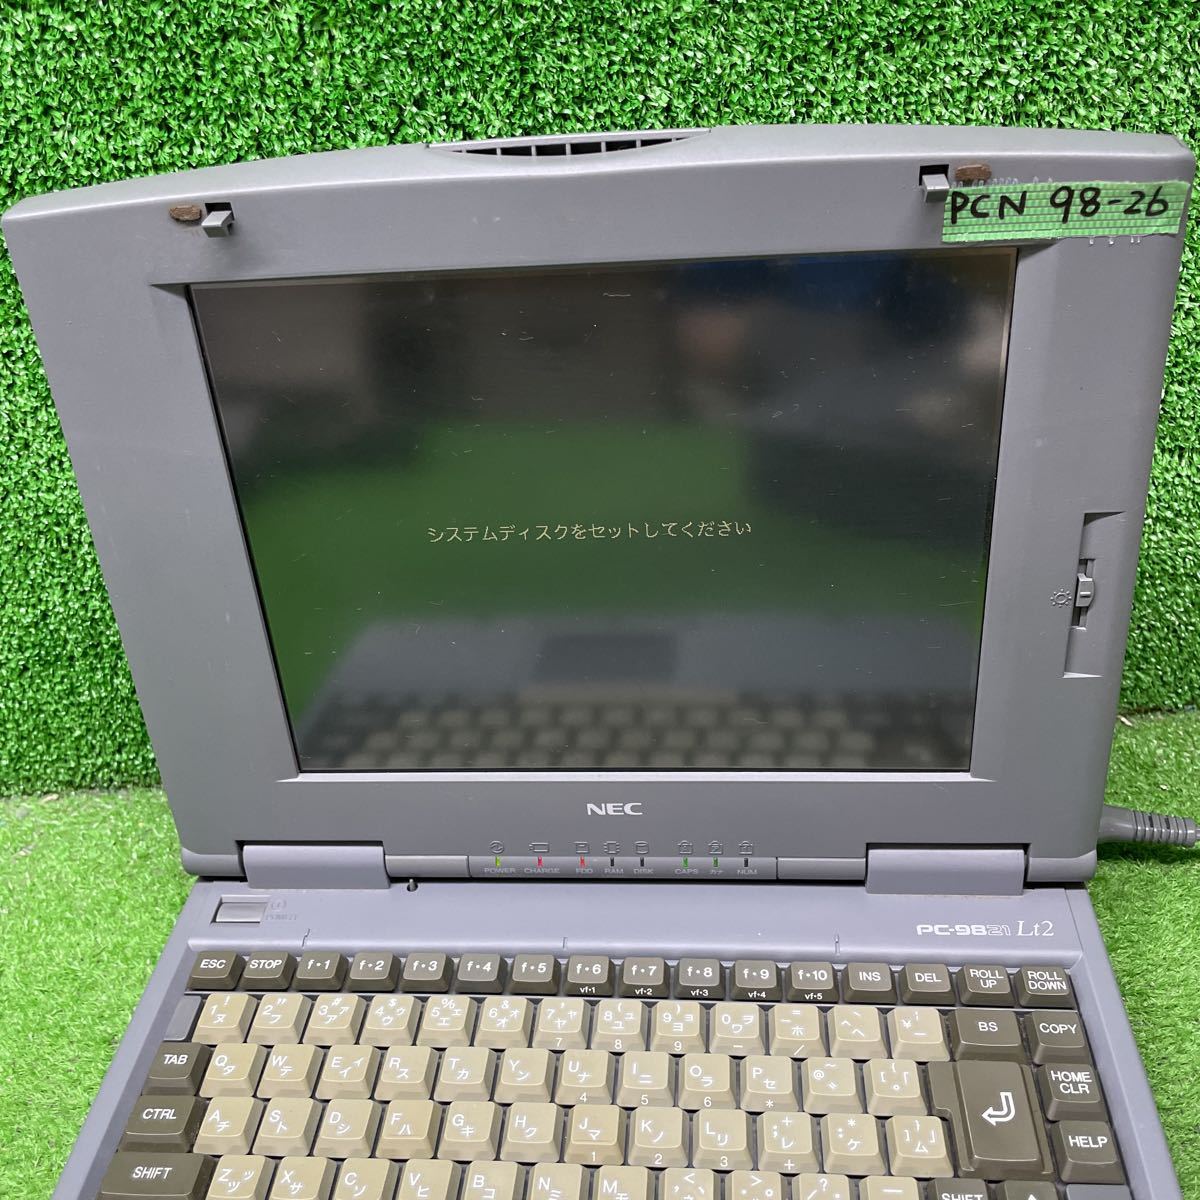 PCN98-26 激安 PC98 ノートブック NEC PC-9821Lt2/3A 通電、起動OK ジャンク_画像2